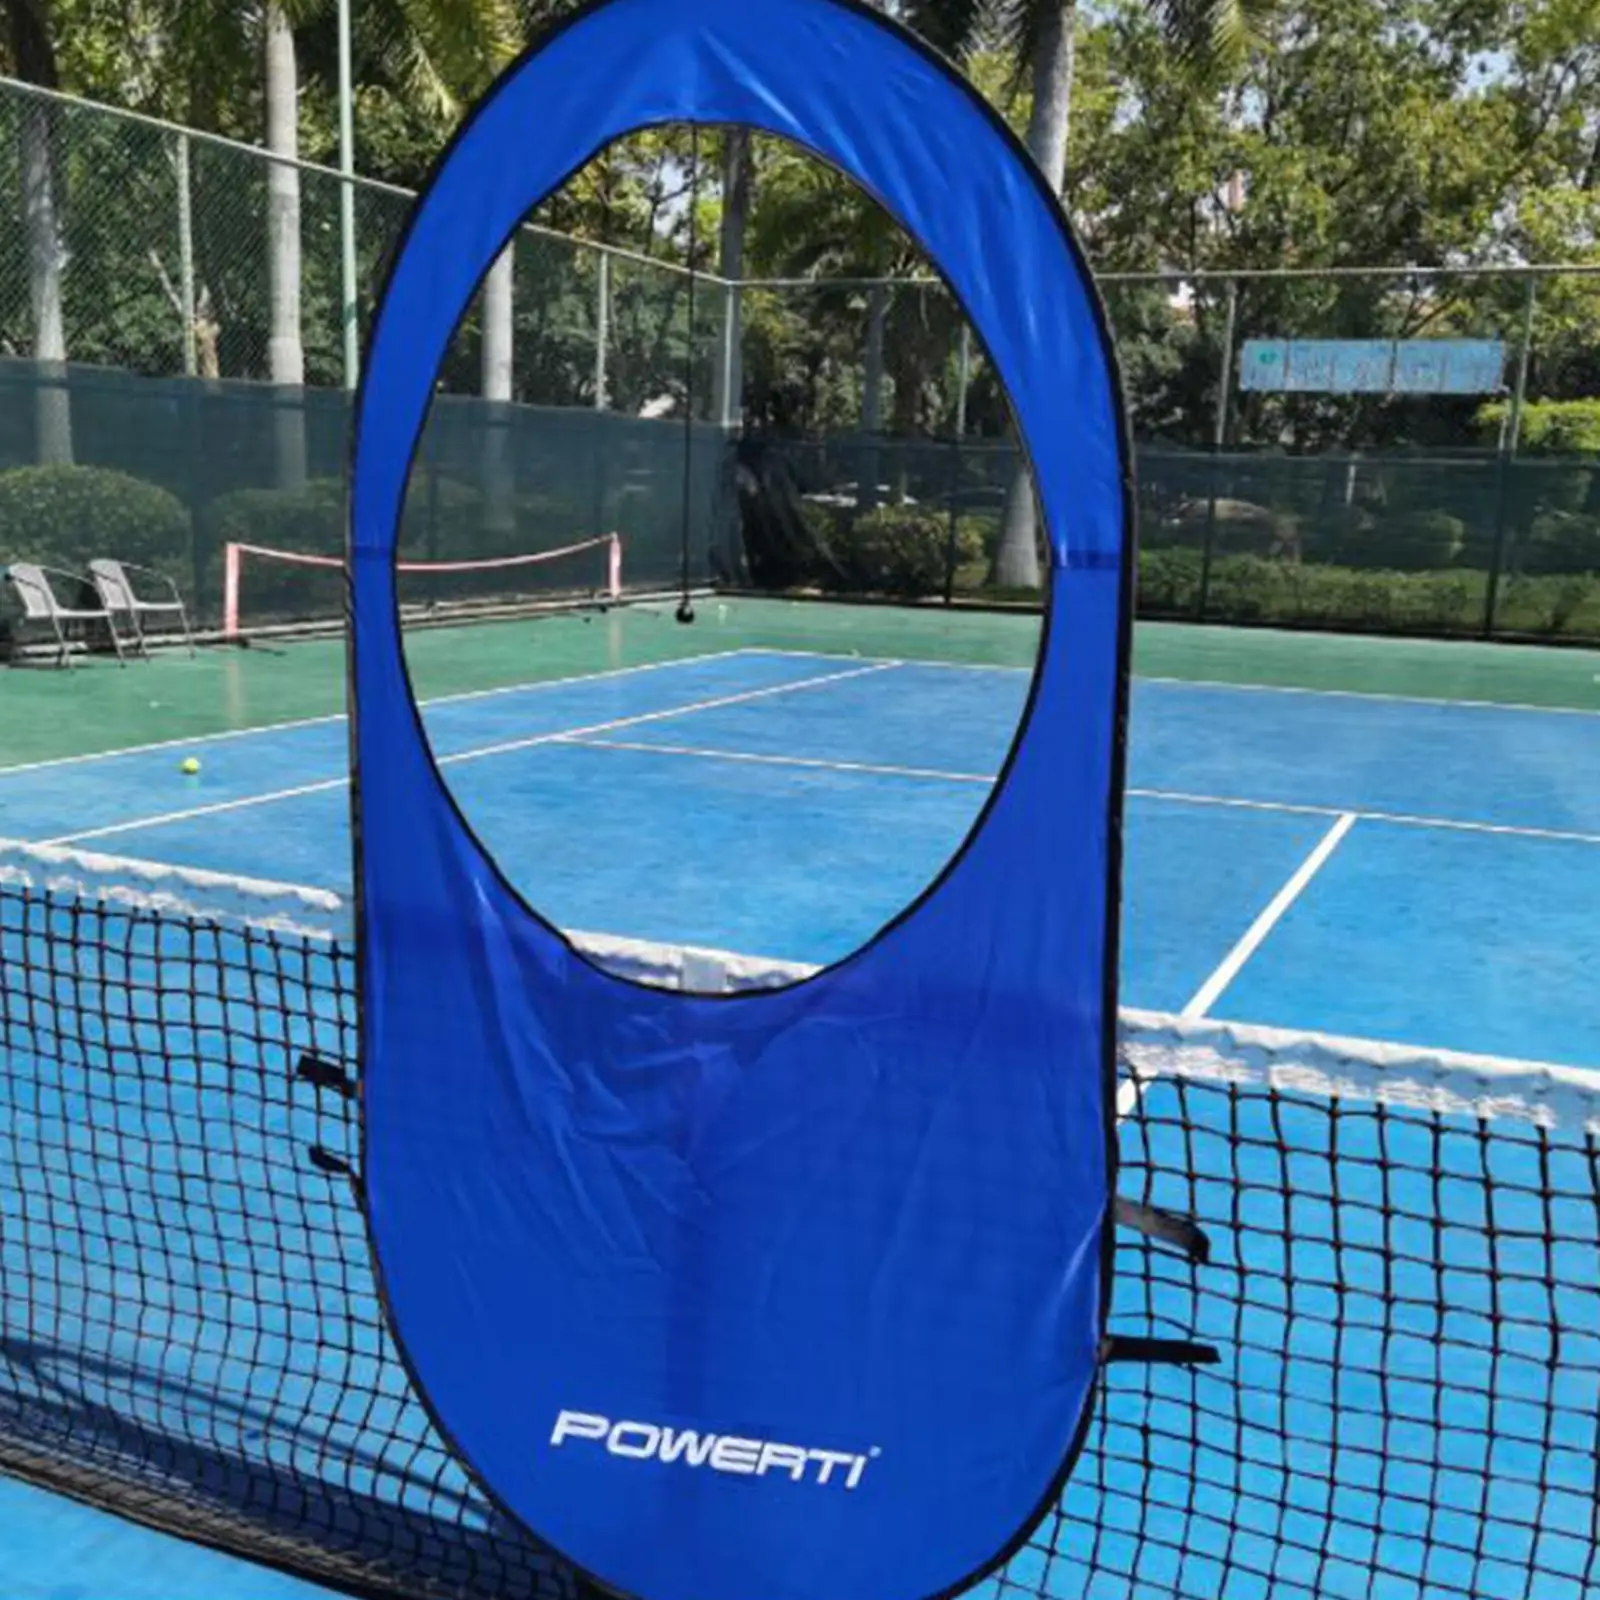 Tennis training target racket trainer equipment practice window target